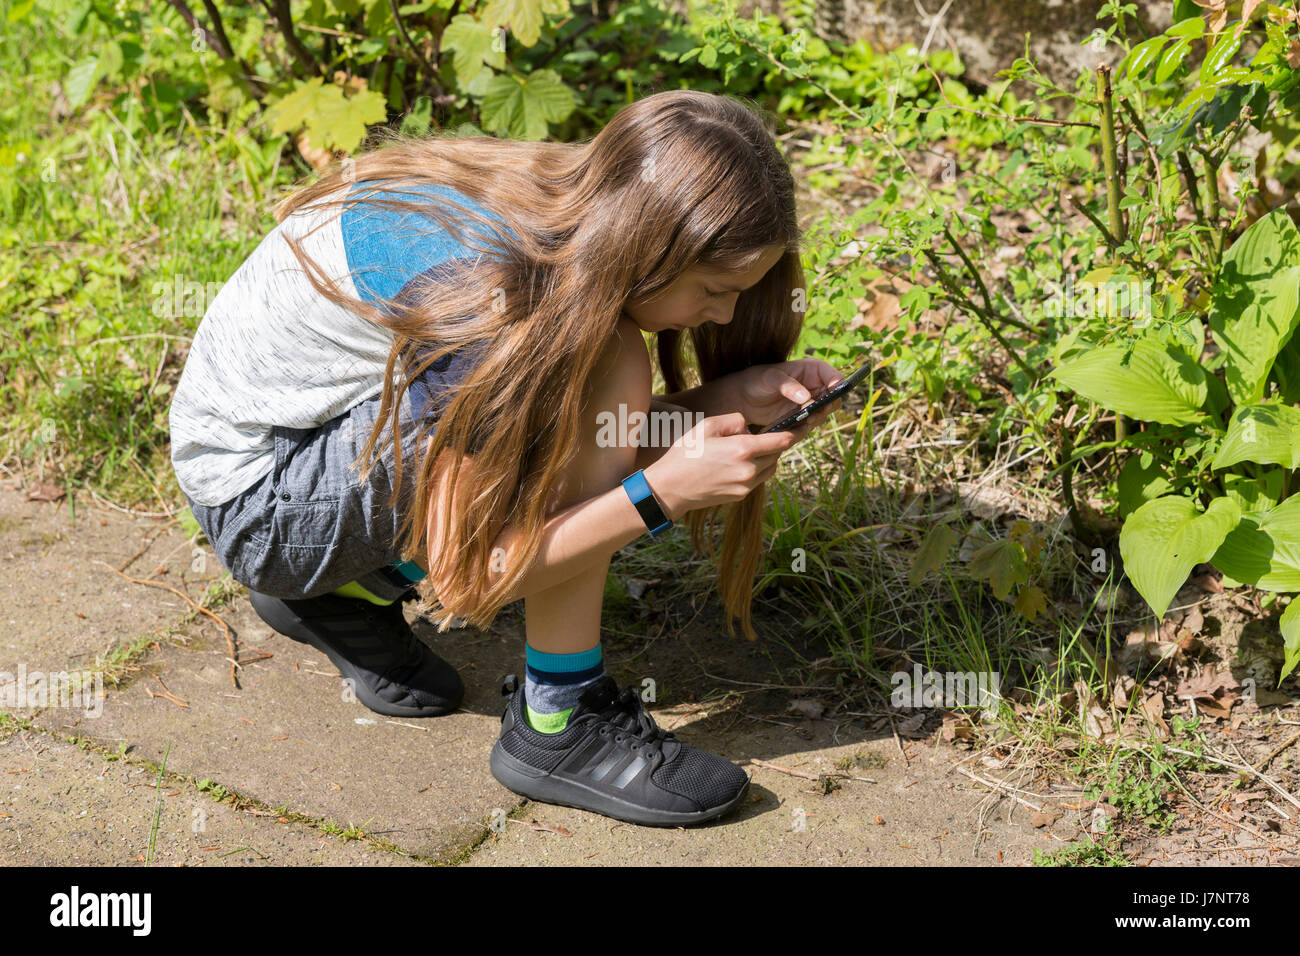 Ein Mädchen mit Kamera auf Touchscreen-Handy / Smartphone zu Bilder / Fotos / Fotos im Garten außerhalb Stockfoto